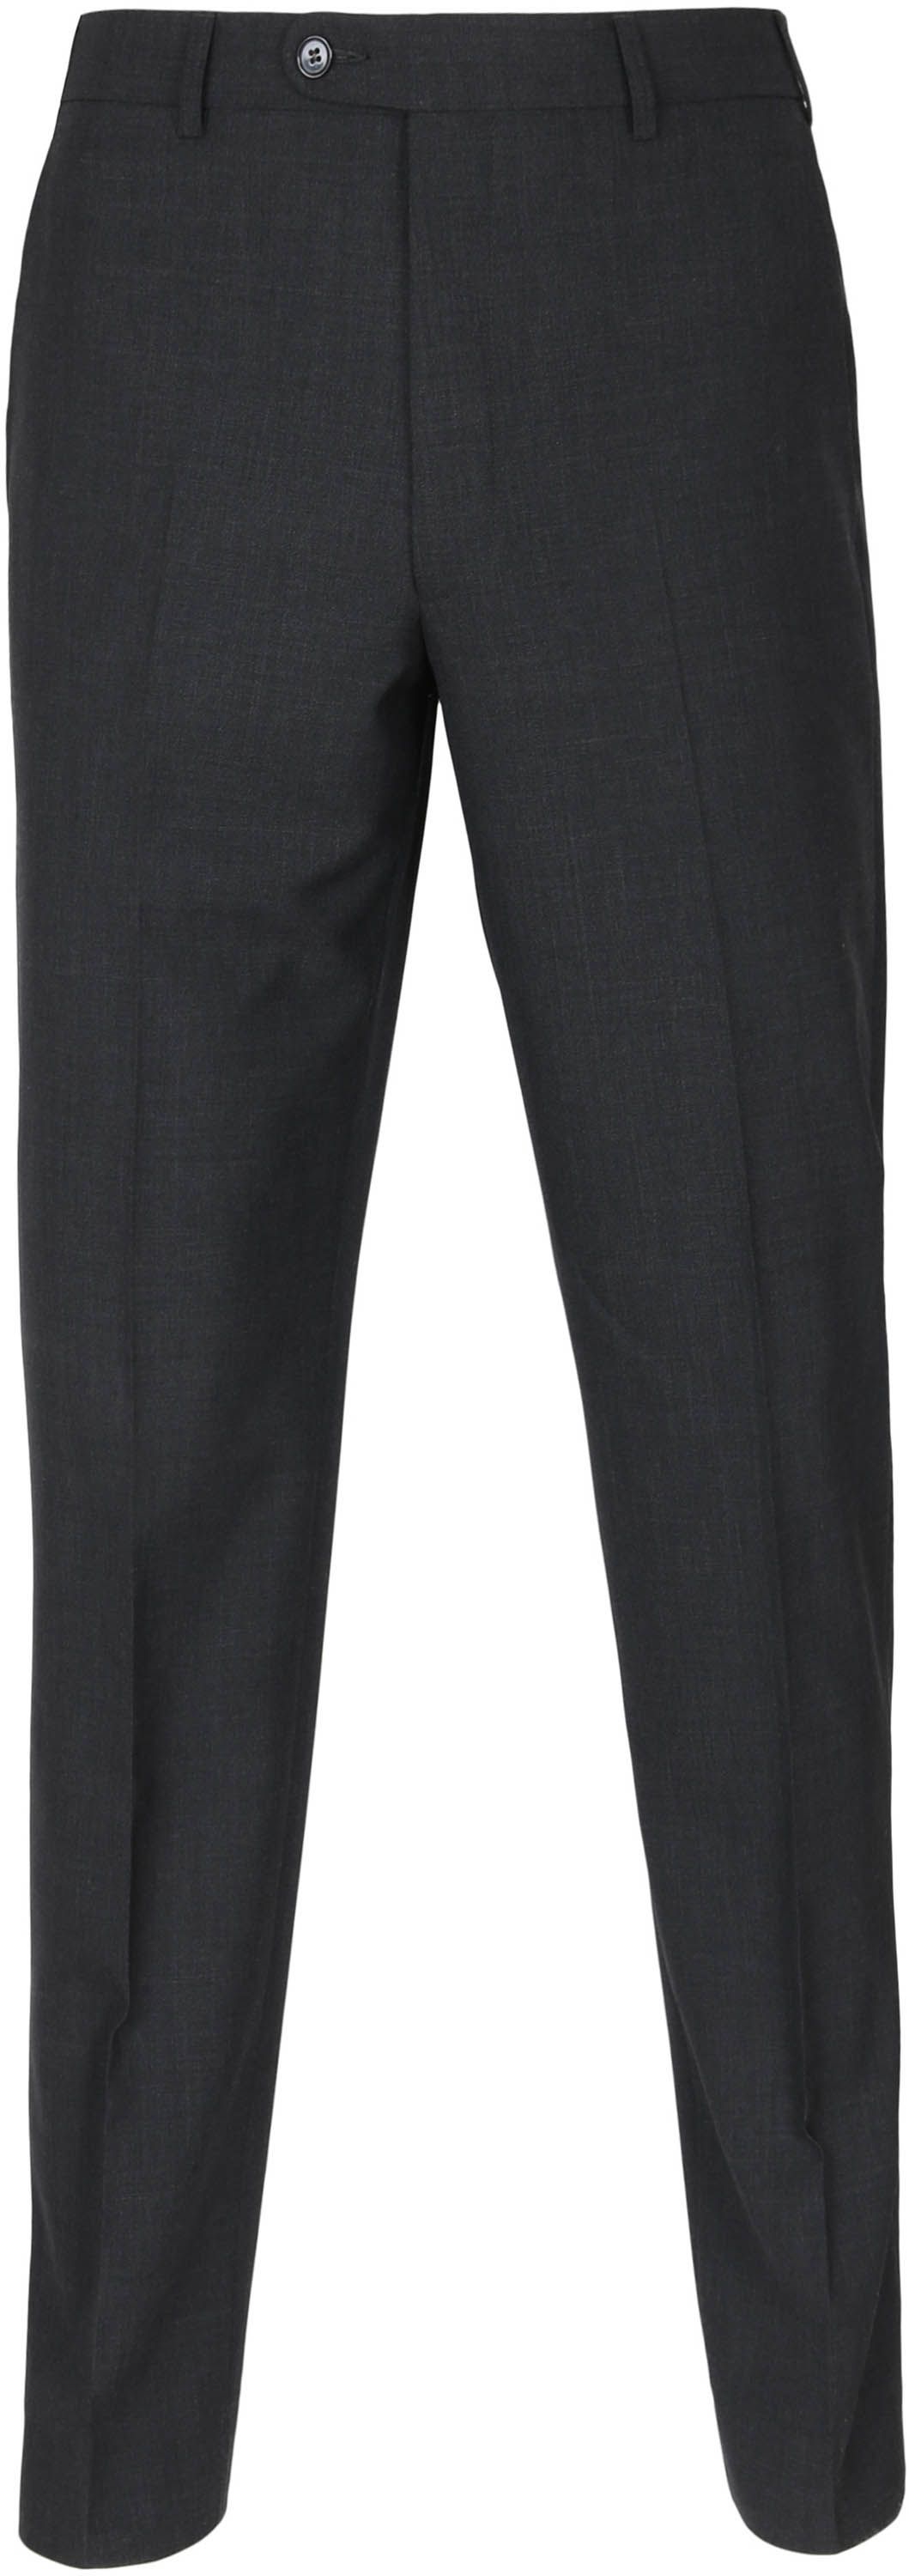 Suitable Pantalon Picador Anthraciet Dark Grey Grey size W 36/38